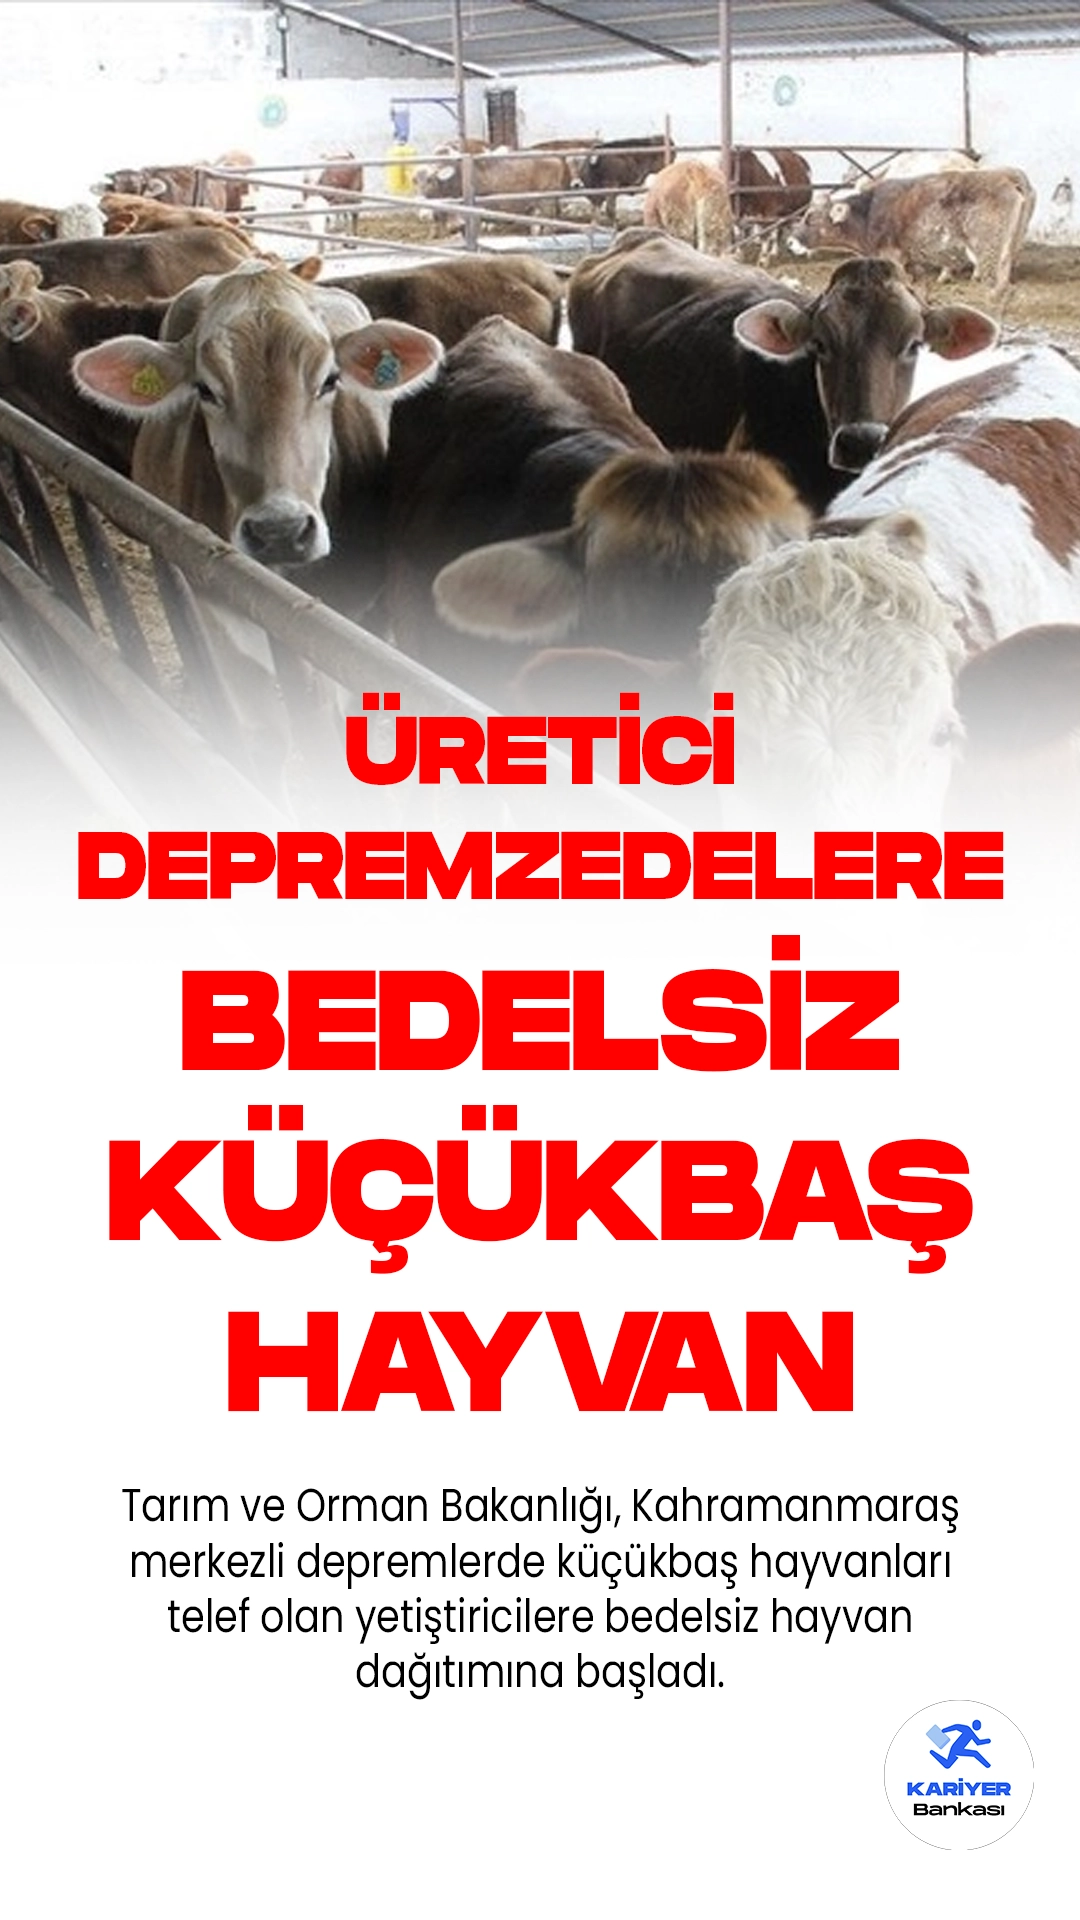 Tarım ve Orman Bakanlığı, Kahramanmaraş merkezli depremlerde küçükbaş hayvanları telef olan yetiştiricilere bedelsiz hayvan dağıtımına başladı.